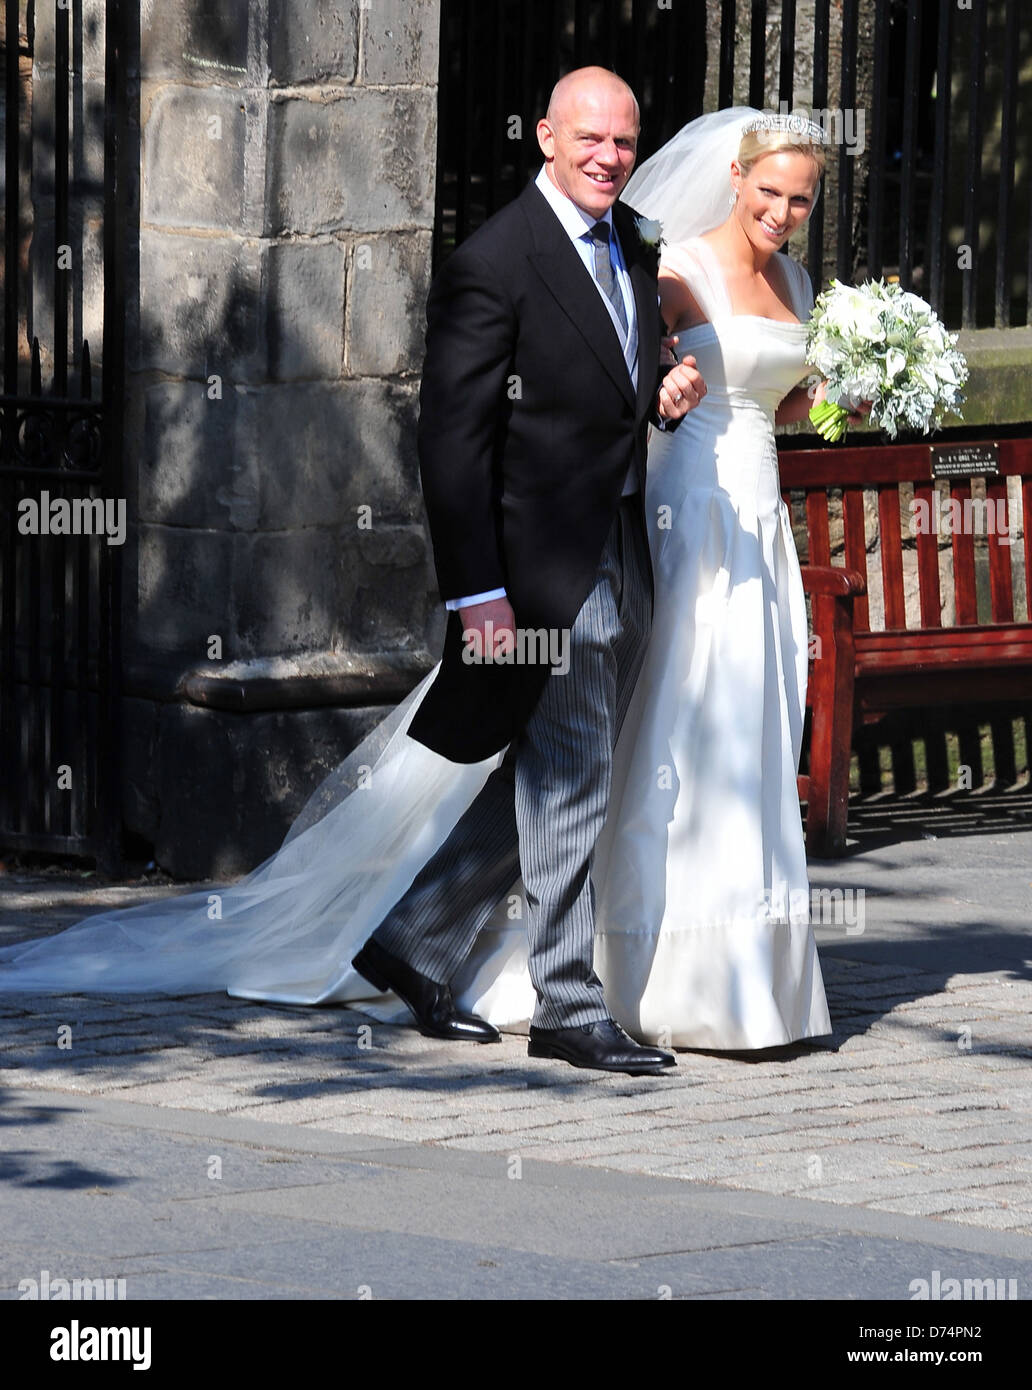 Mike Tindall und Zara Phillips die Hochzeit von Zara Phillips und Mike  Tindall im Canongate Kirk Edinburgh, Schottland - 30.07.11 Stockfotografie  - Alamy